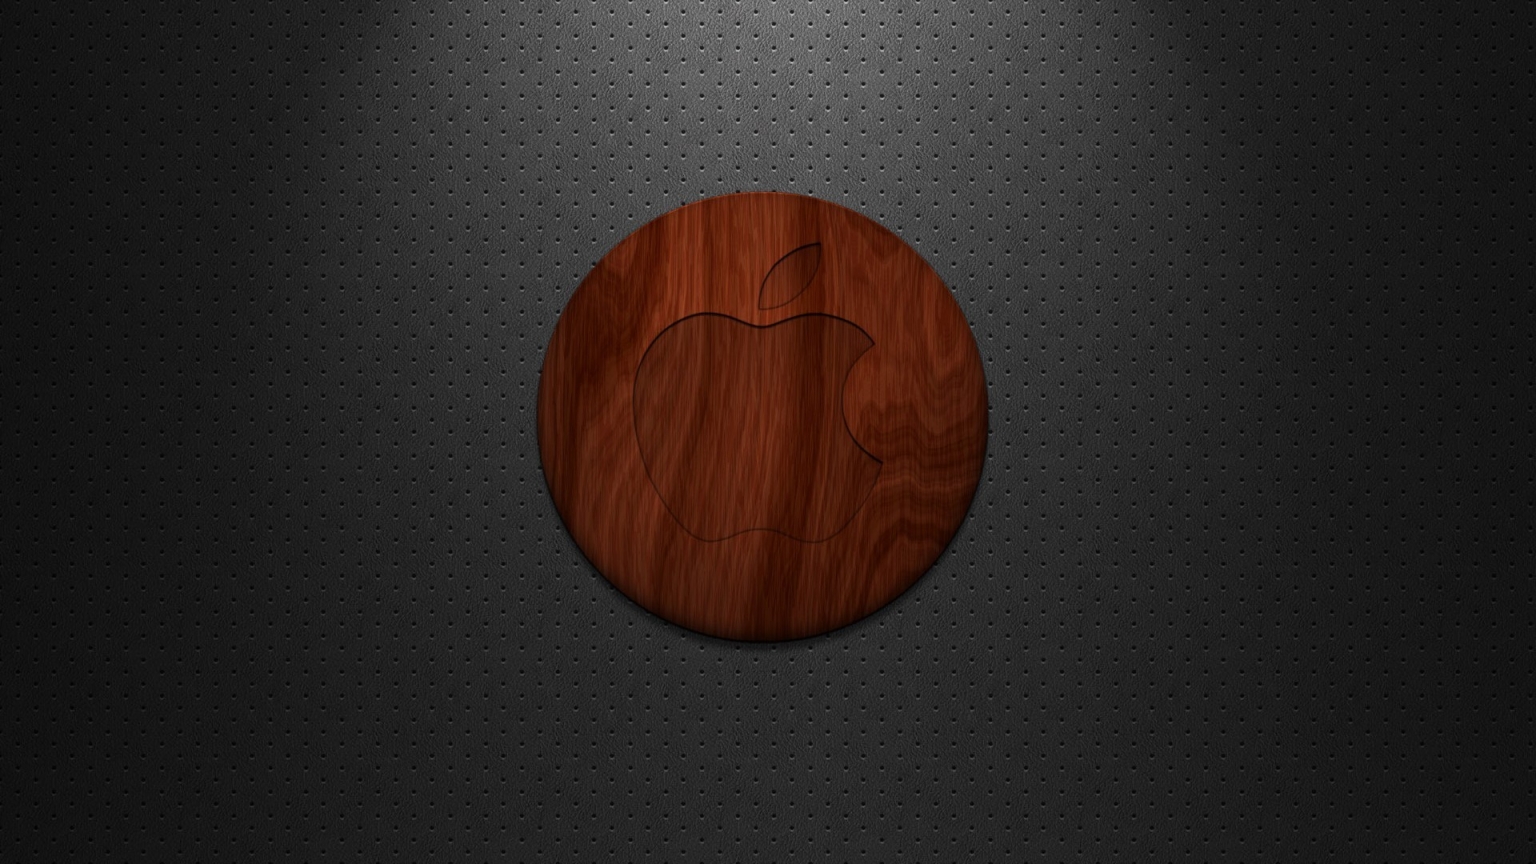 Apple Wood Logo for 1536 x 864 HDTV resolution